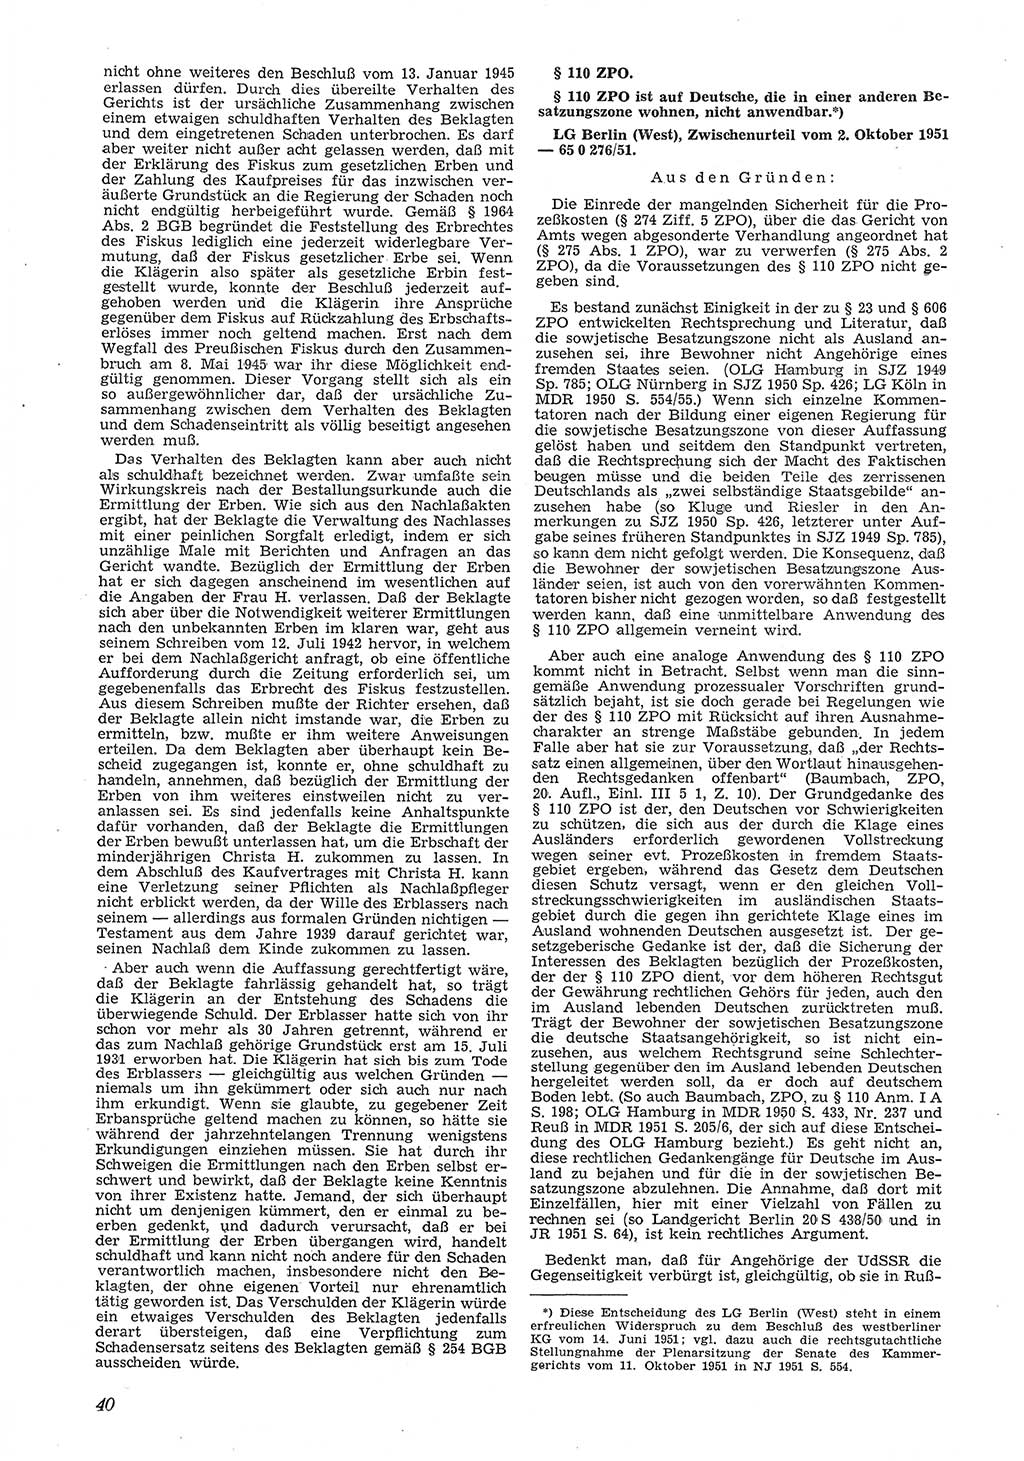 Neue Justiz (NJ), Zeitschrift für Recht und Rechtswissenschaft [Deutsche Demokratische Republik (DDR)], 6. Jahrgang 1952, Seite 40 (NJ DDR 1952, S. 40)